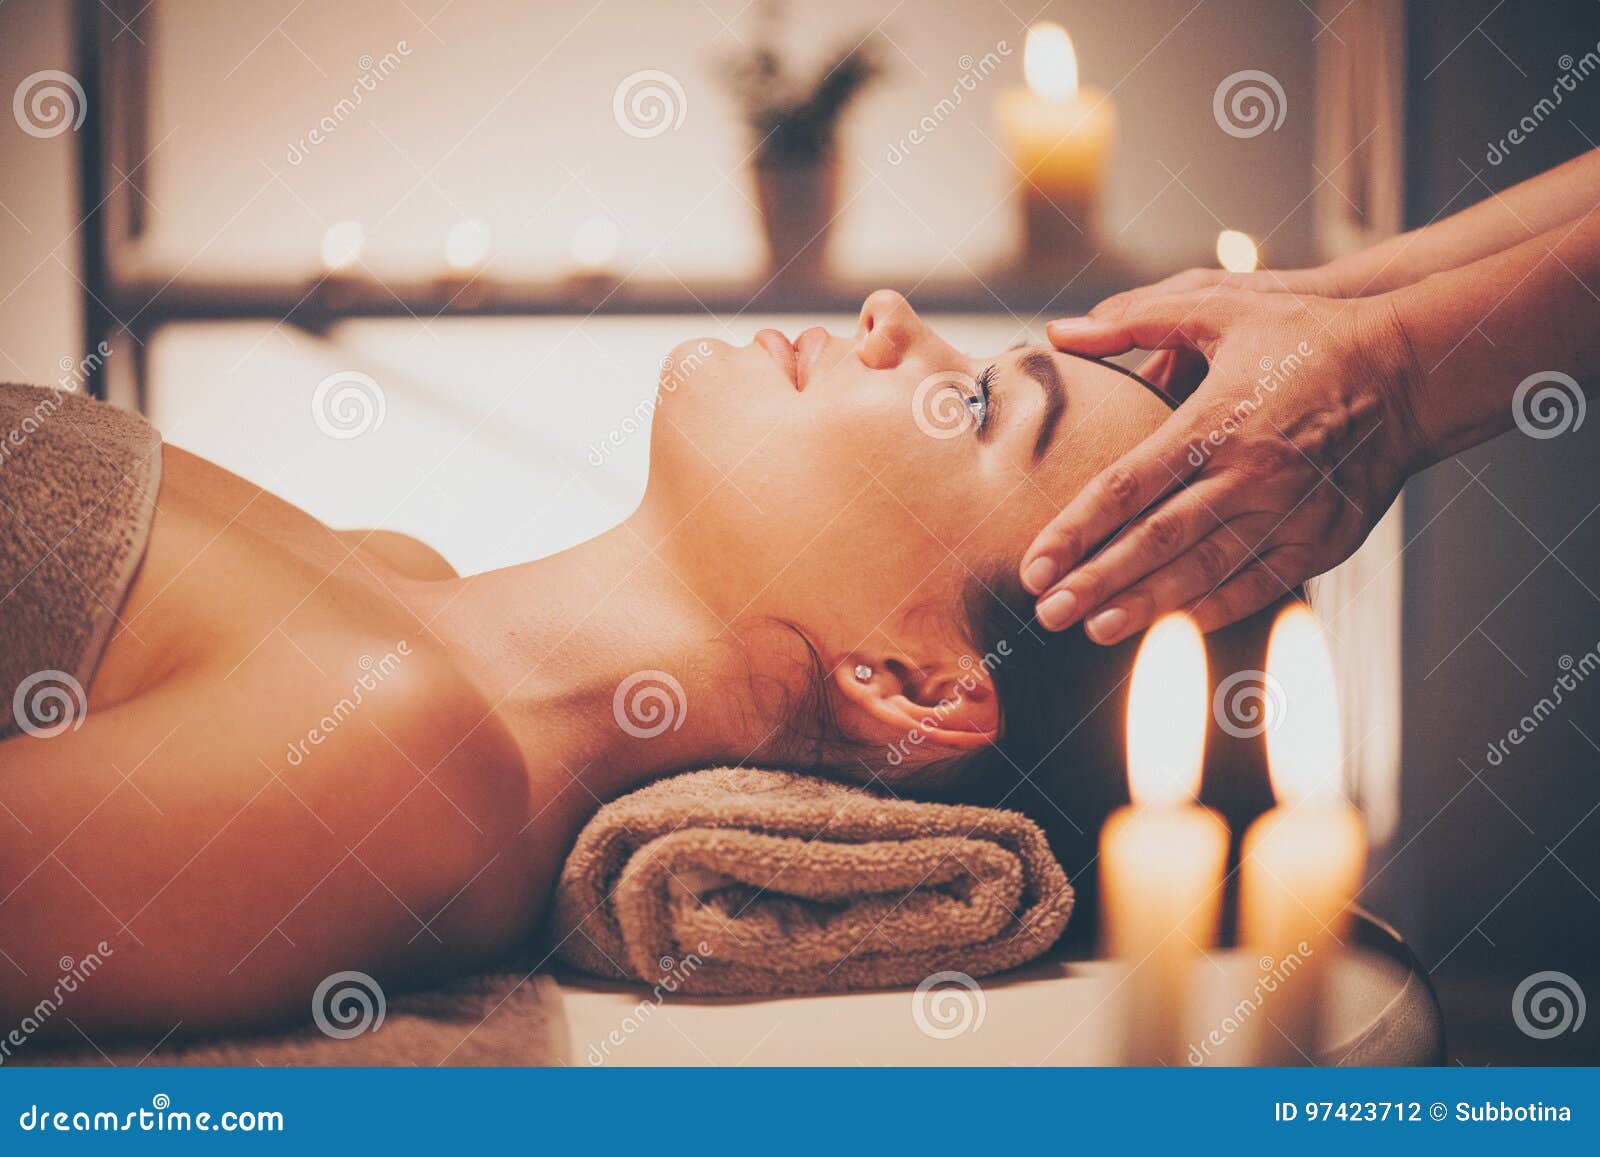 https://thumbs.dreamstime.com/z/spa-facial-massage-brunette-woman-enjoying-relaxing-face-massage-beauty-salon-97423712.jpg